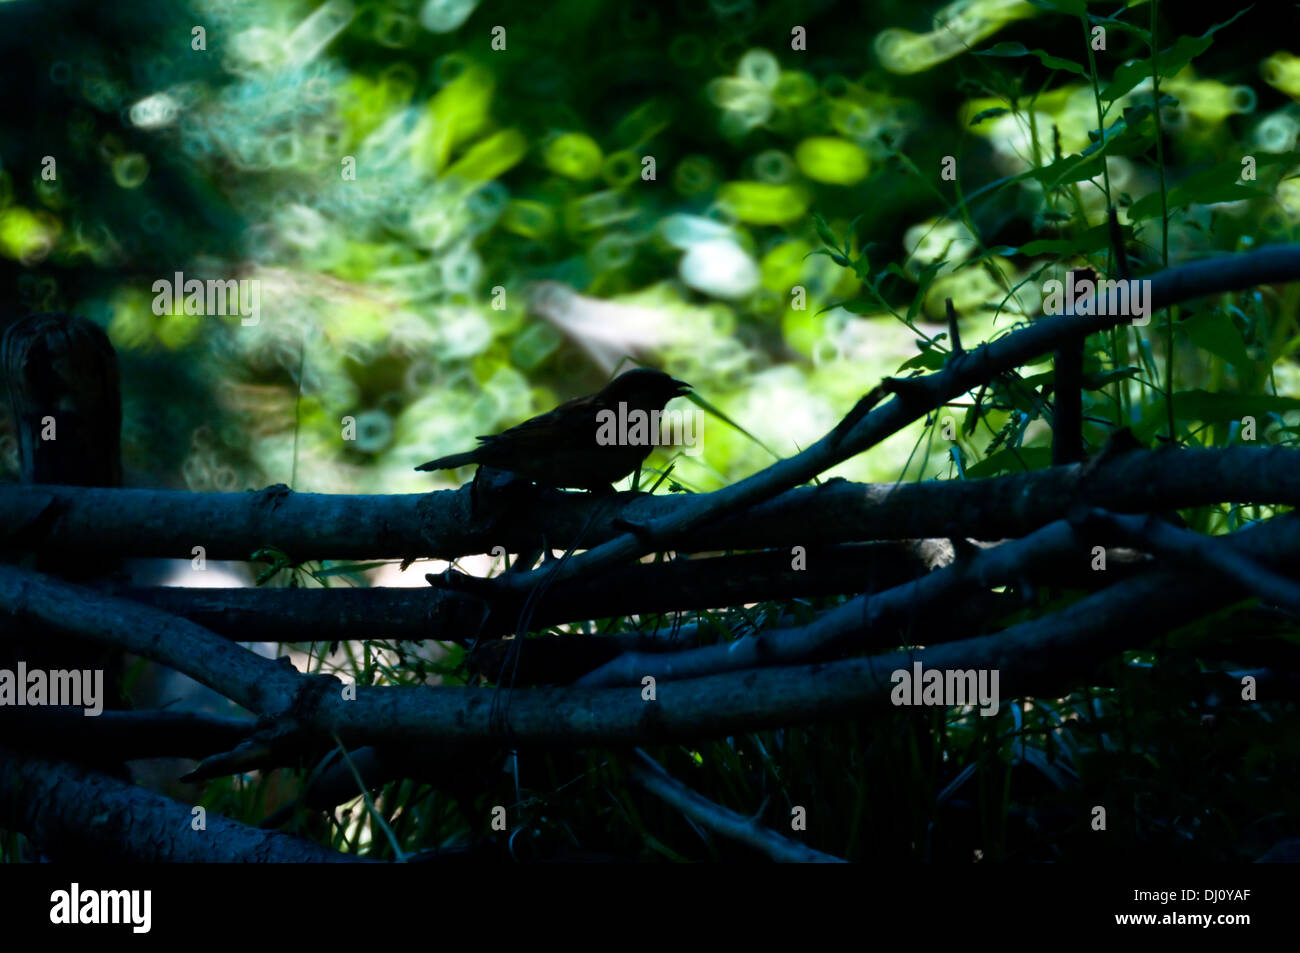 Un moineau se trouve en silhouette sur un petite clôture de branches d'arbre avec une fantaisie de tour de jeux de lumière dans un 500mm miroir. Banque D'Images